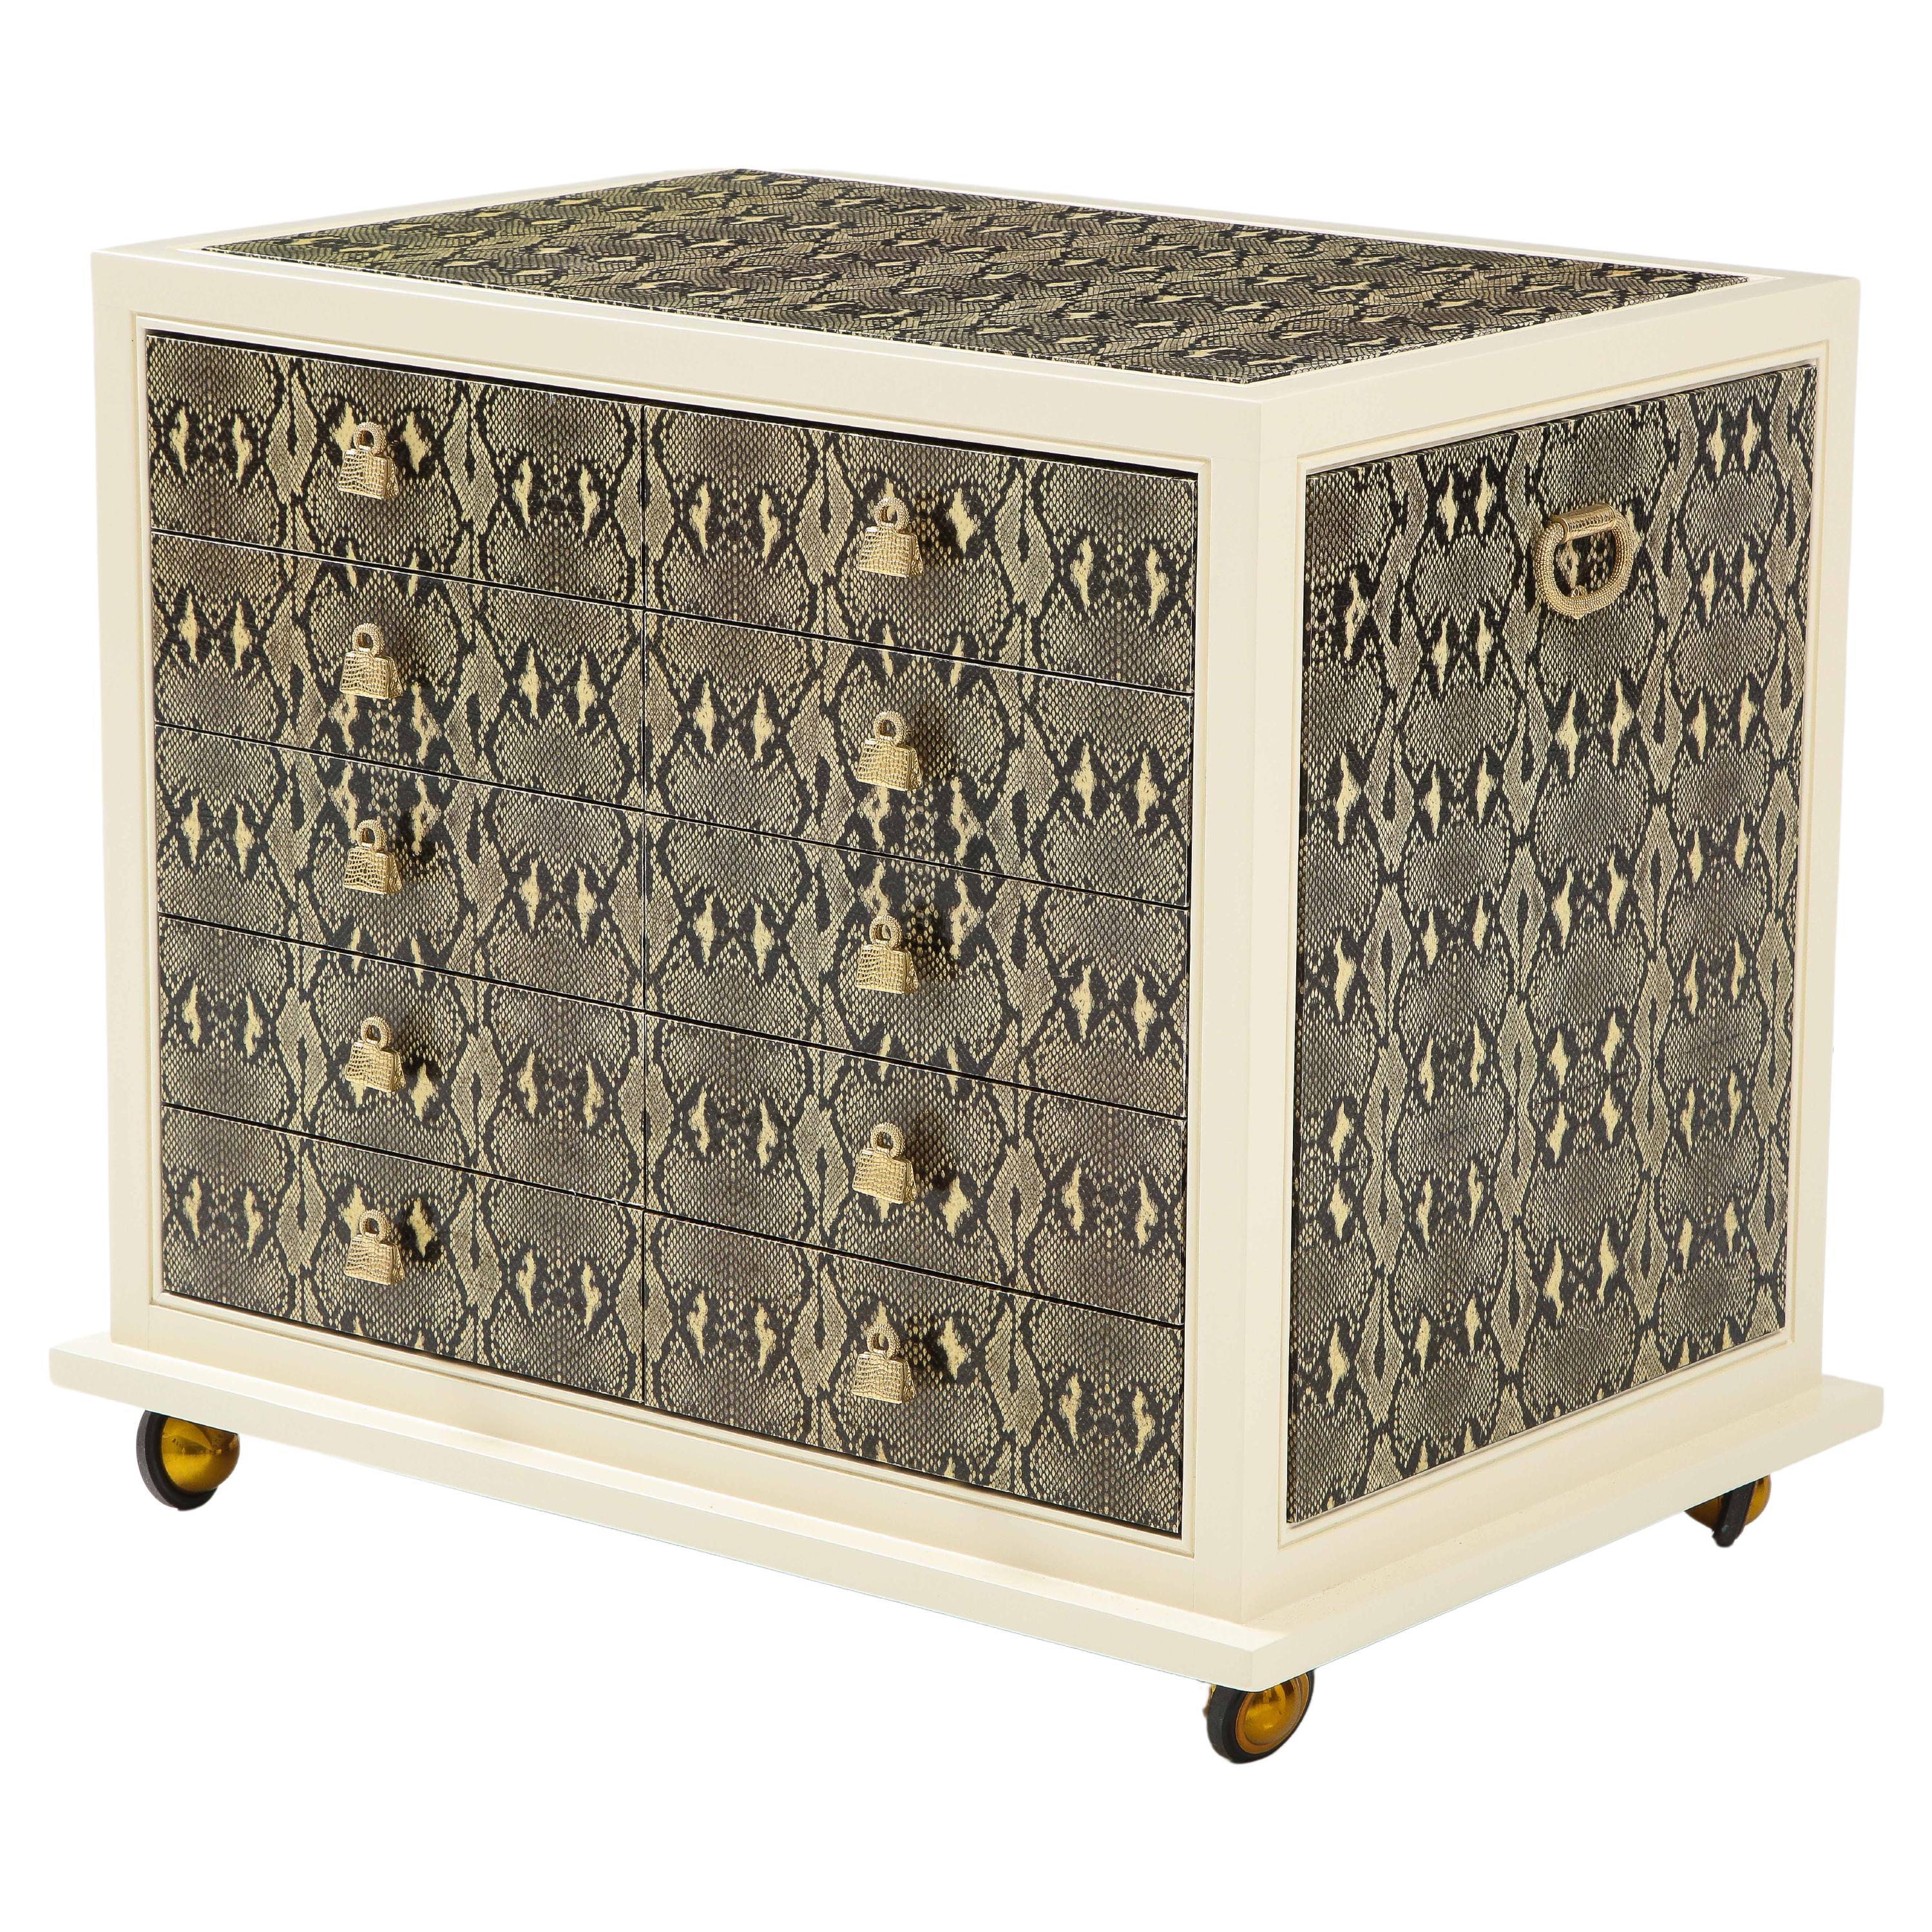 Judith Leiber Custom Designed Snakeskin Cabinet. For Sale